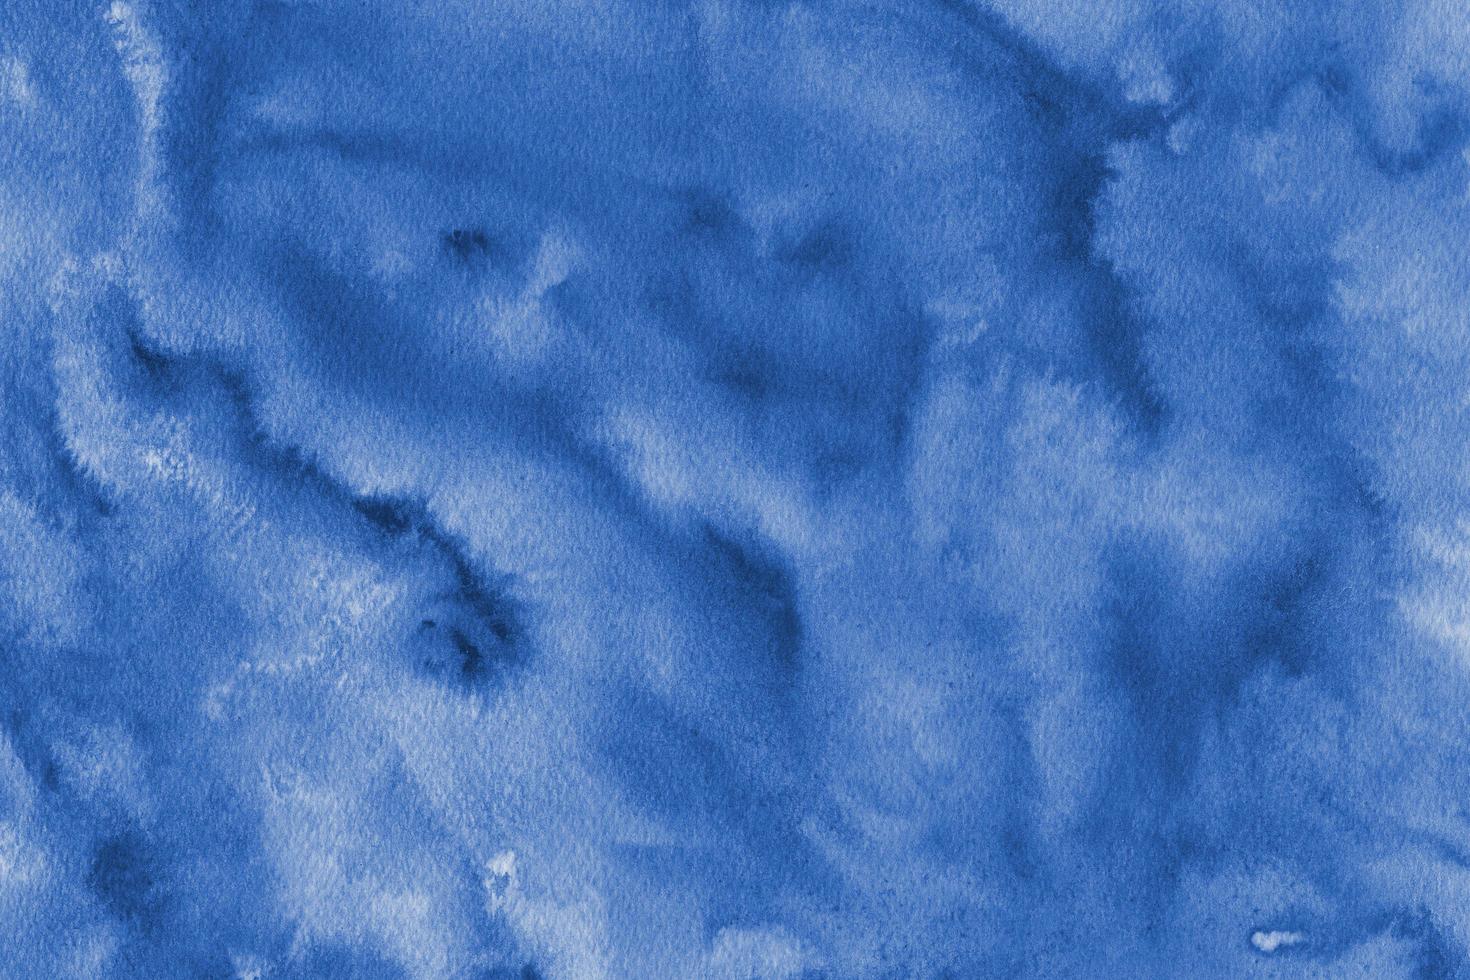 abstrakter Aquarell dunkelblauer weicher flüssiger Marmorhimmel und Wolkenbeschaffenheit mit pastellfarbenem flüssigem Muster. foto